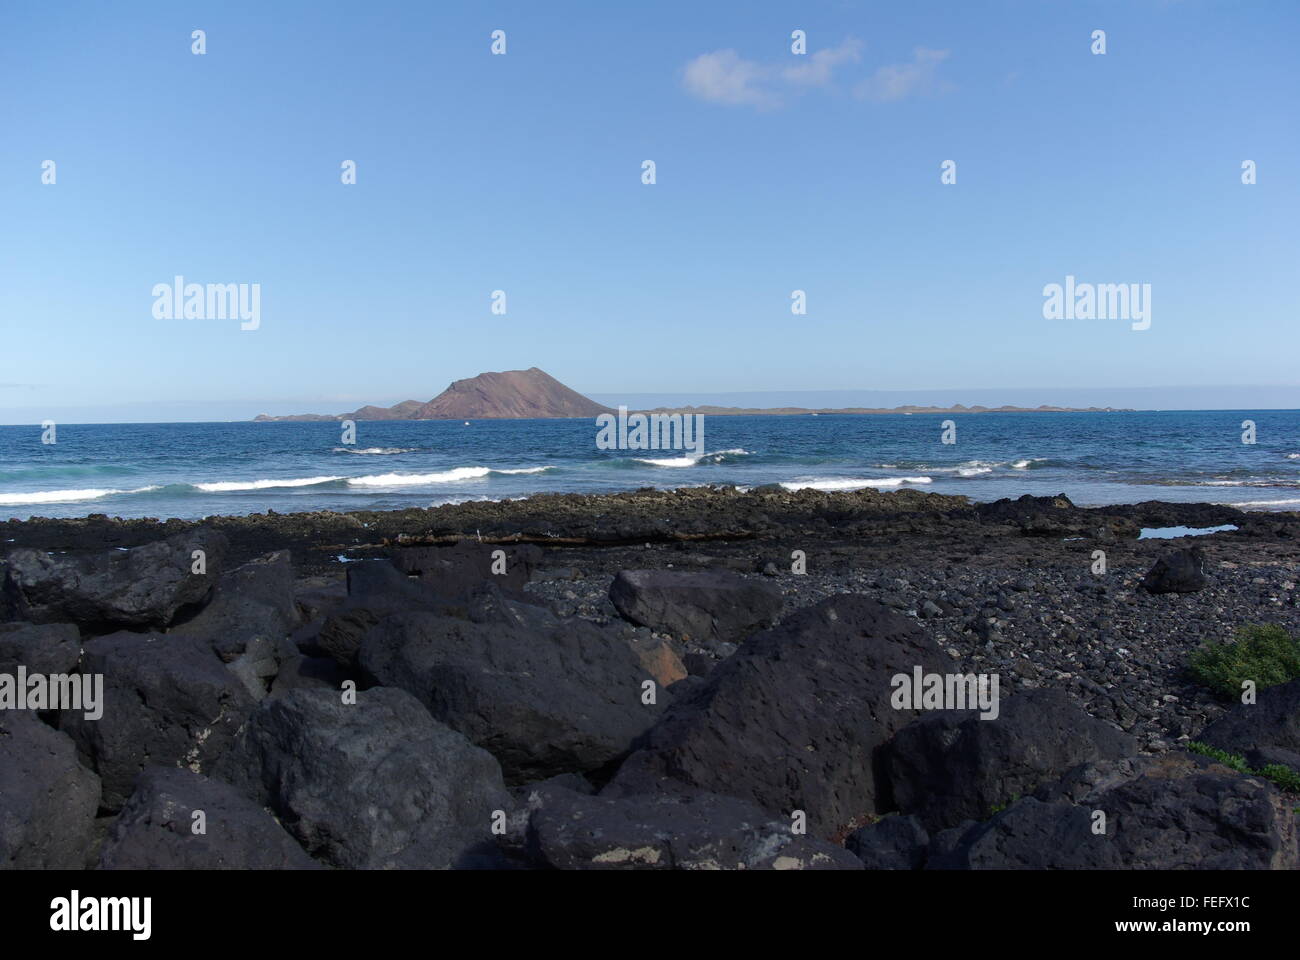 Los Lobos island viewed from Corralejo, Fuerteventura, Canary Islands Stock Photo